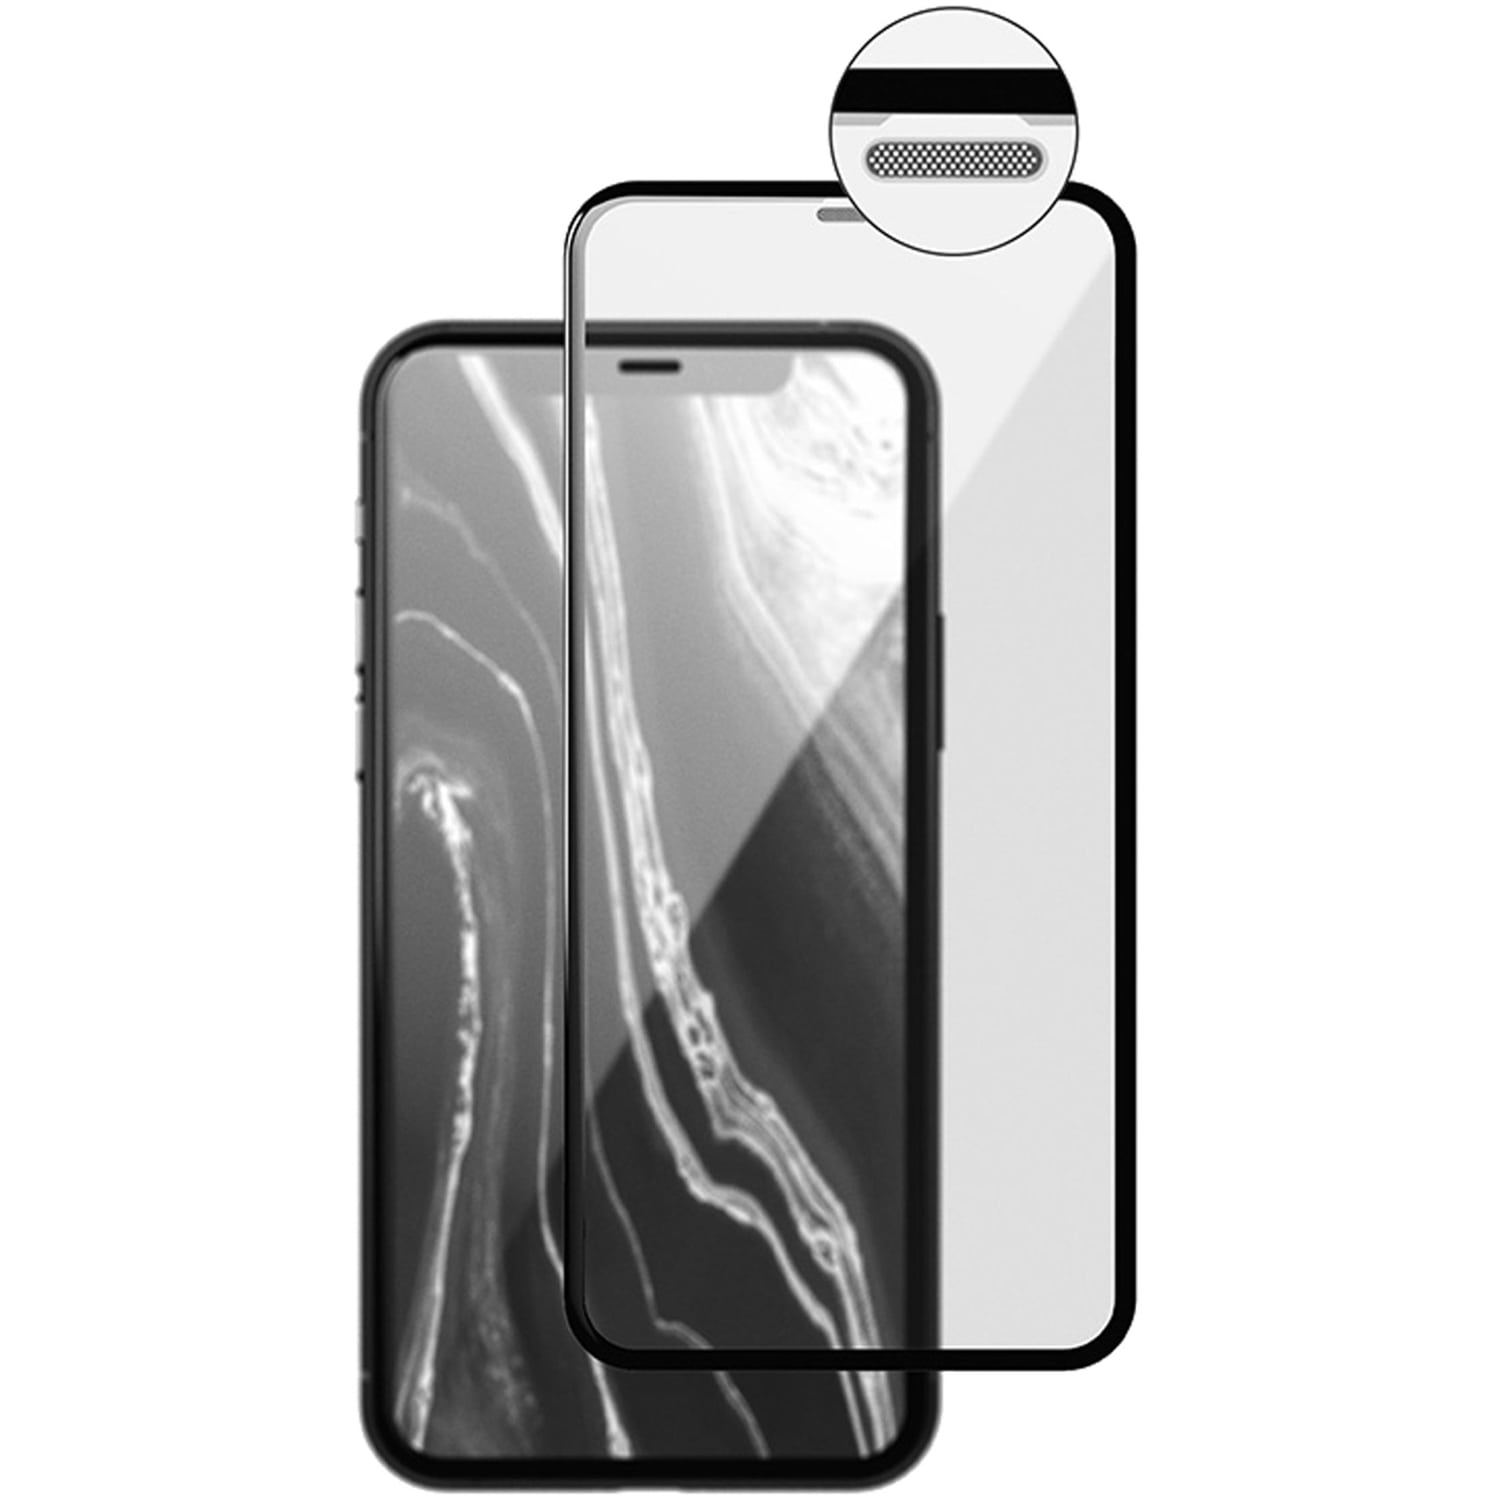 Стекло защитное 3D Breaking Grid для iPhone 12 Mini (Черный), купить в  Москве, цены в интернет-магазинах на Мегамаркет